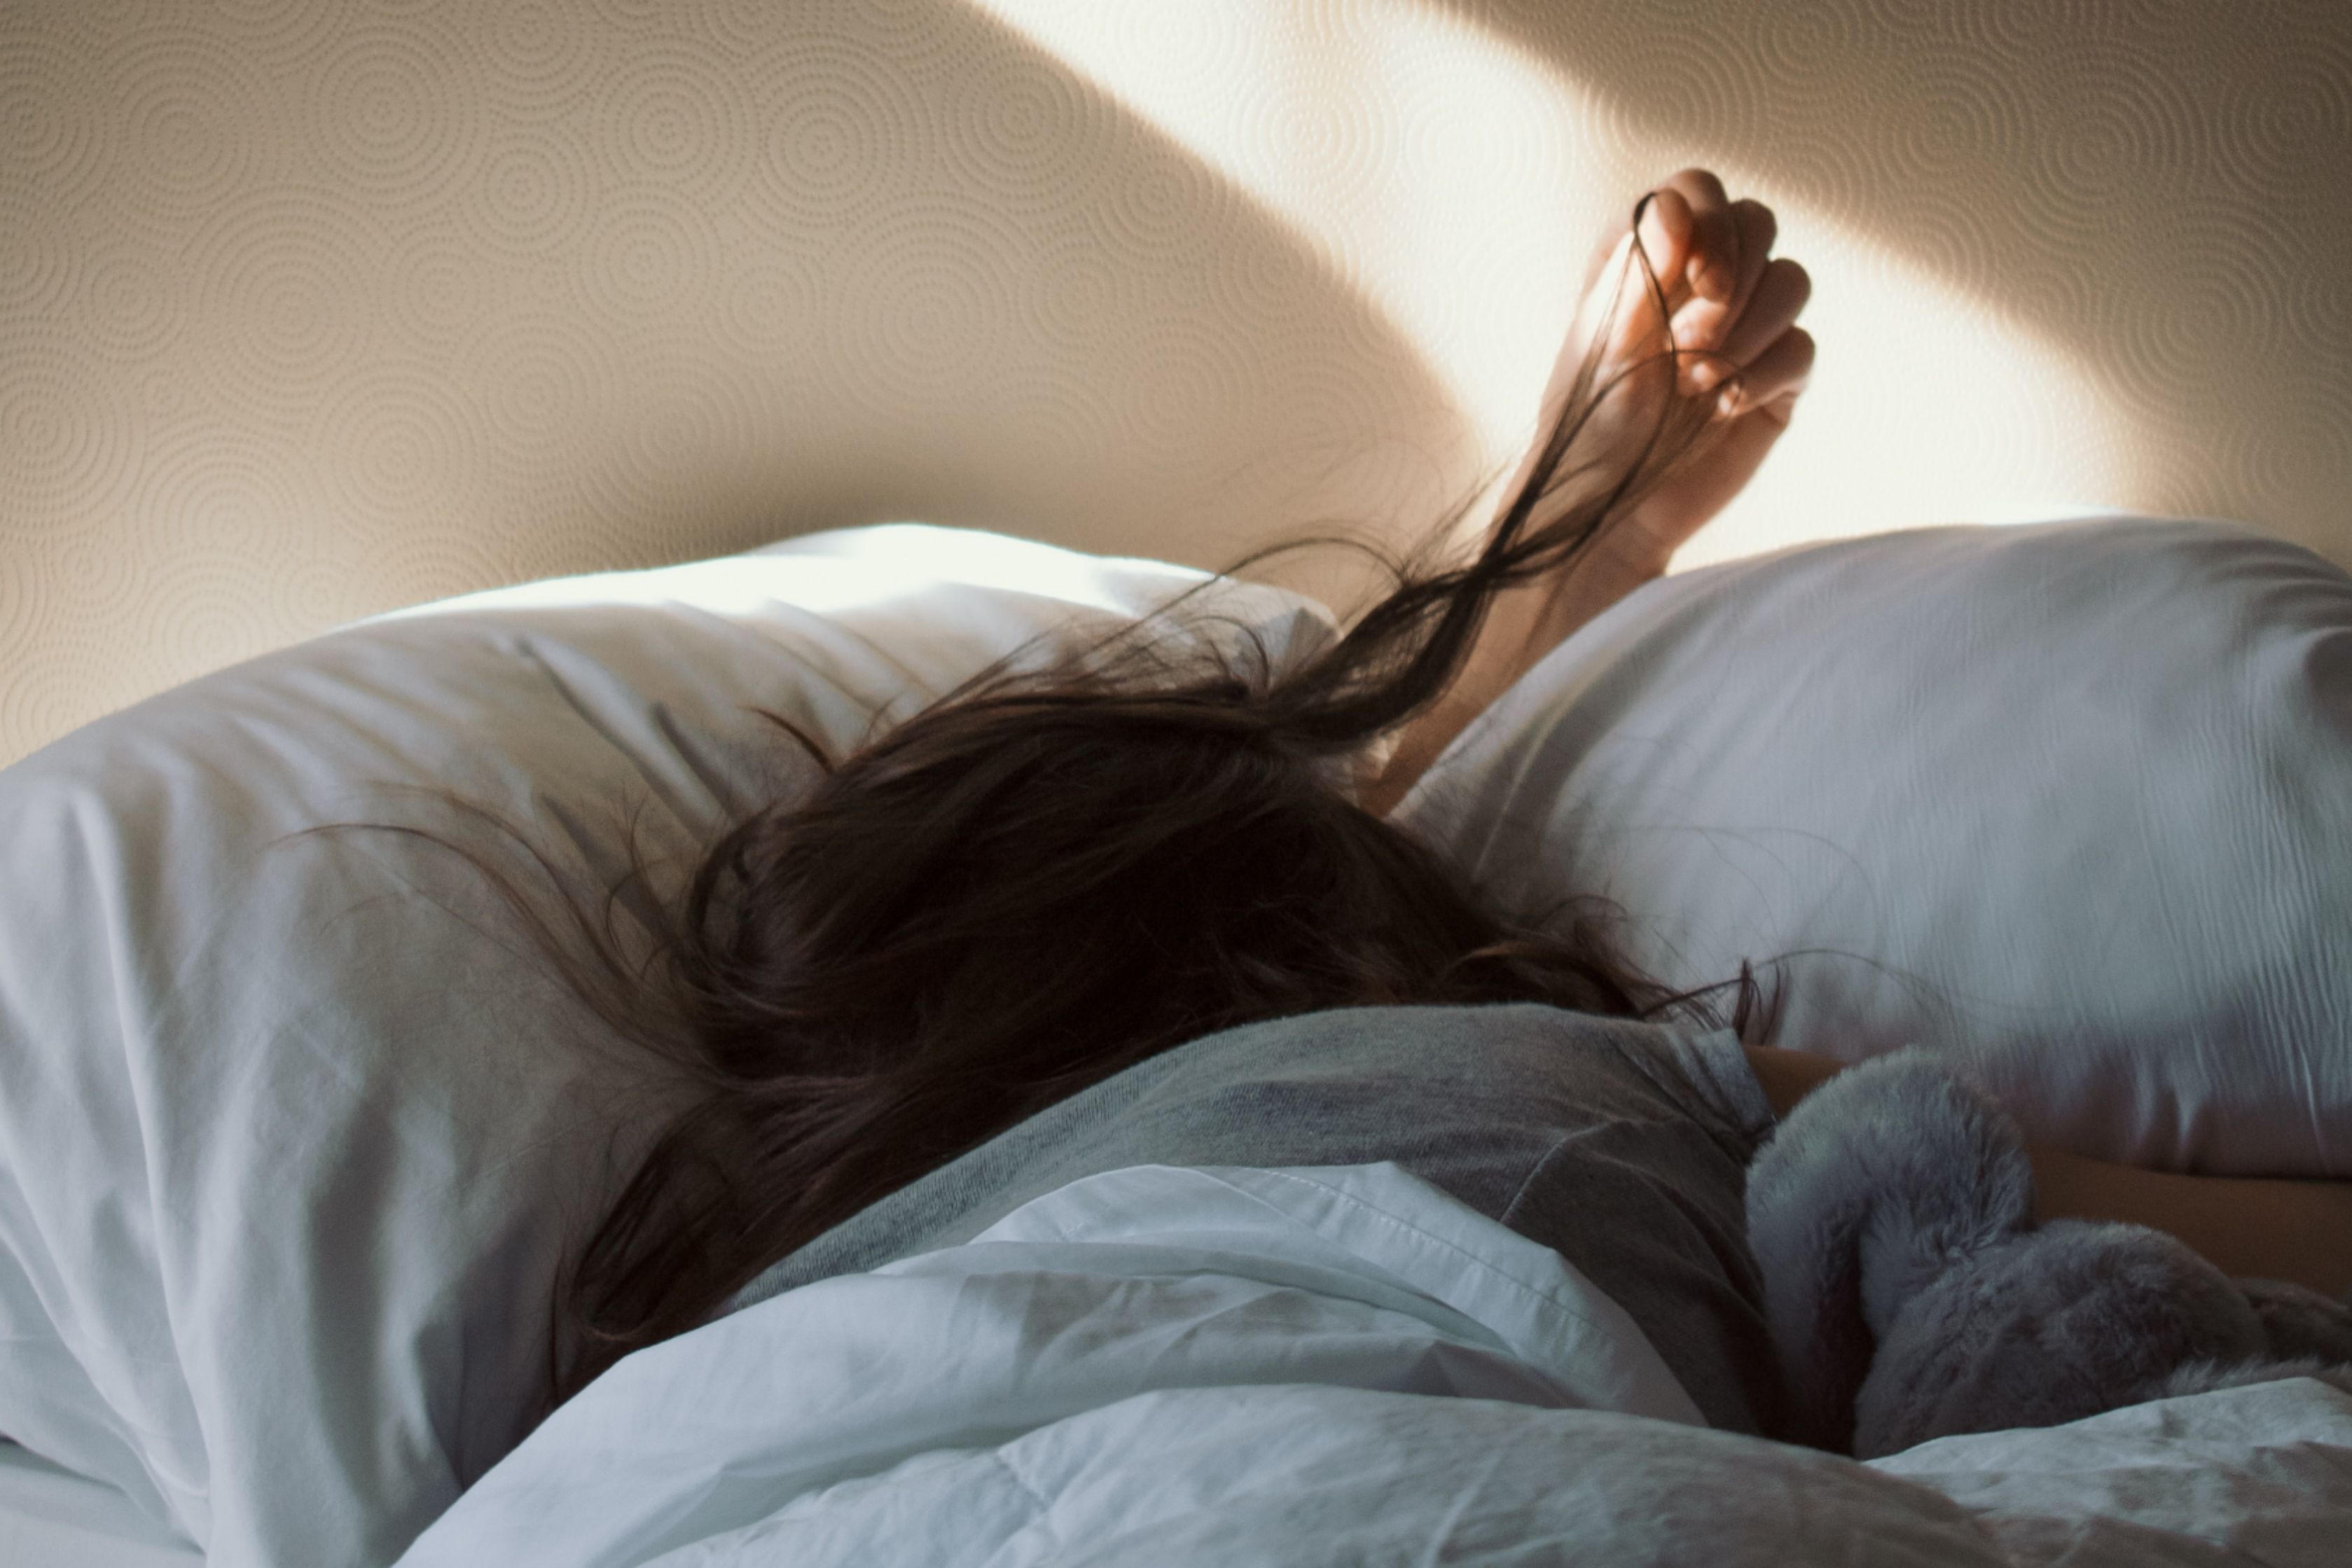 3 Tipps für mehr Entspannung im Alltag & besseren Schlaf